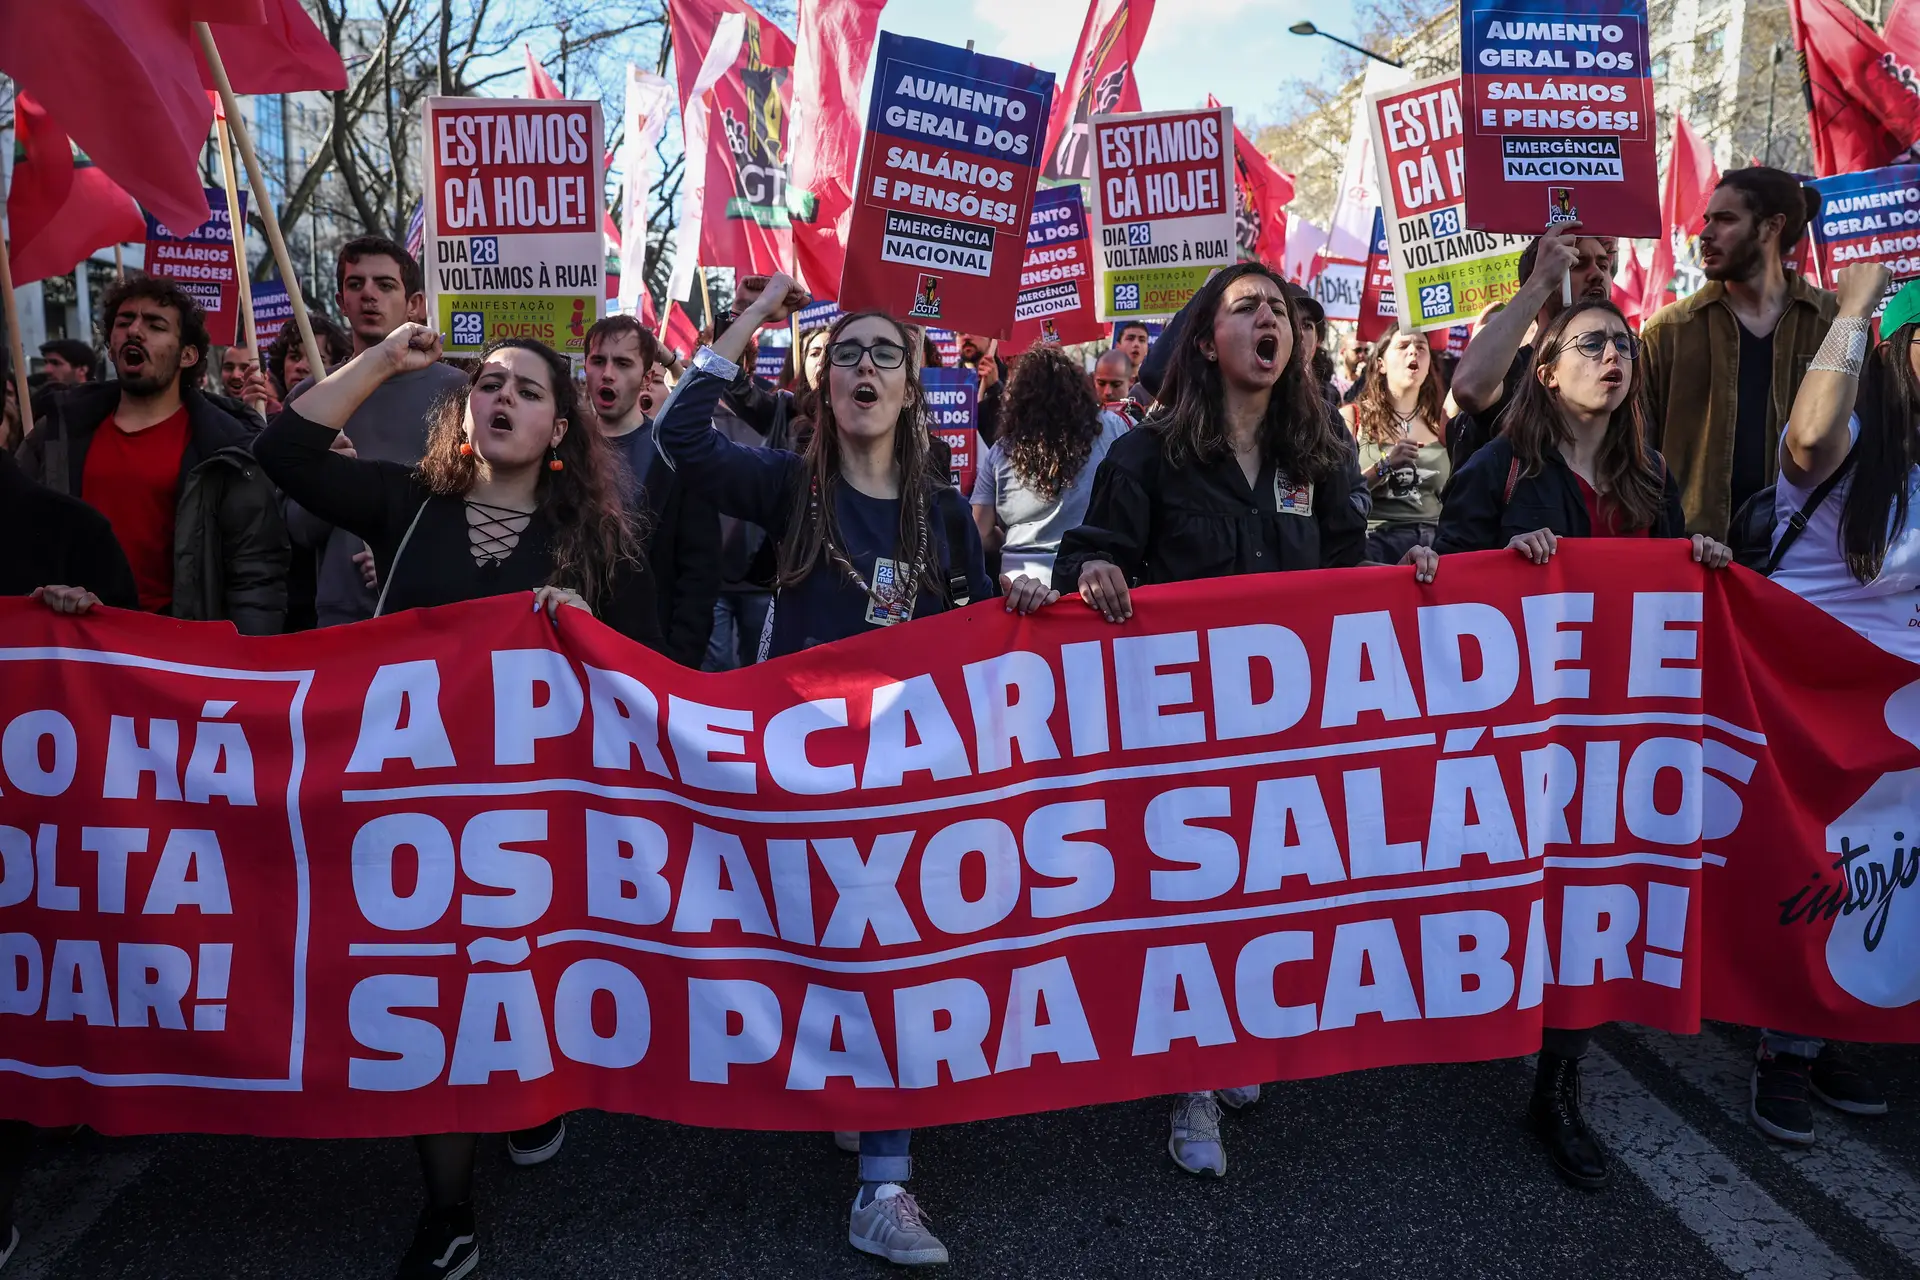 "Costa, escuta: o povo está em luta": imagens da manifestação contra aumento do custo de vida